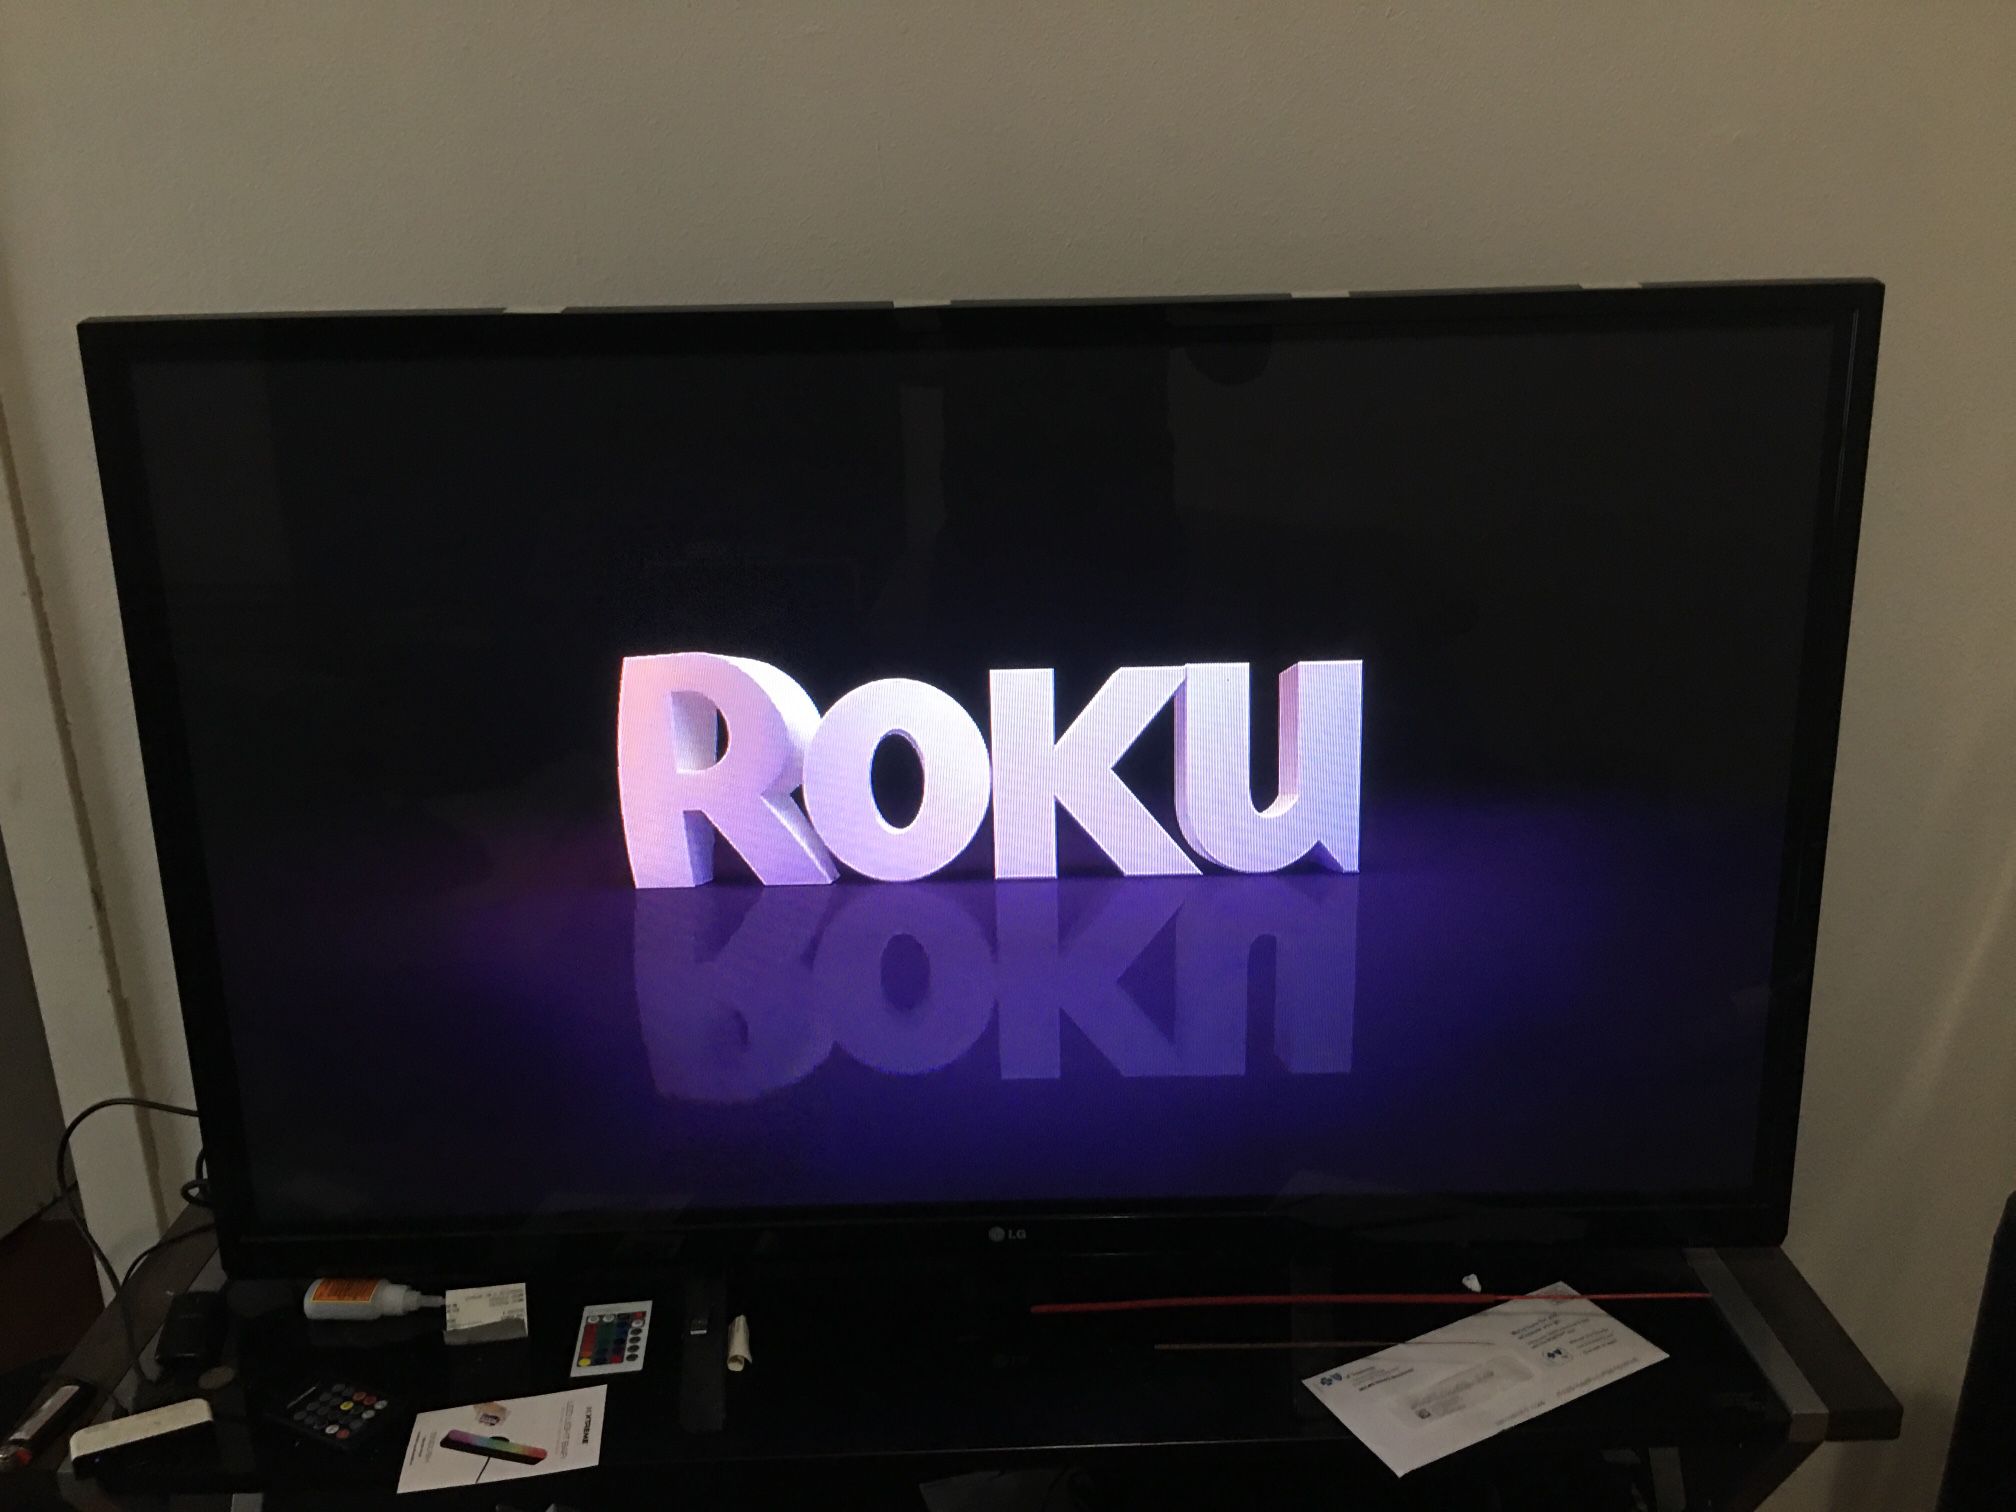 45” LG TV WITH ROKU EXPRESS 